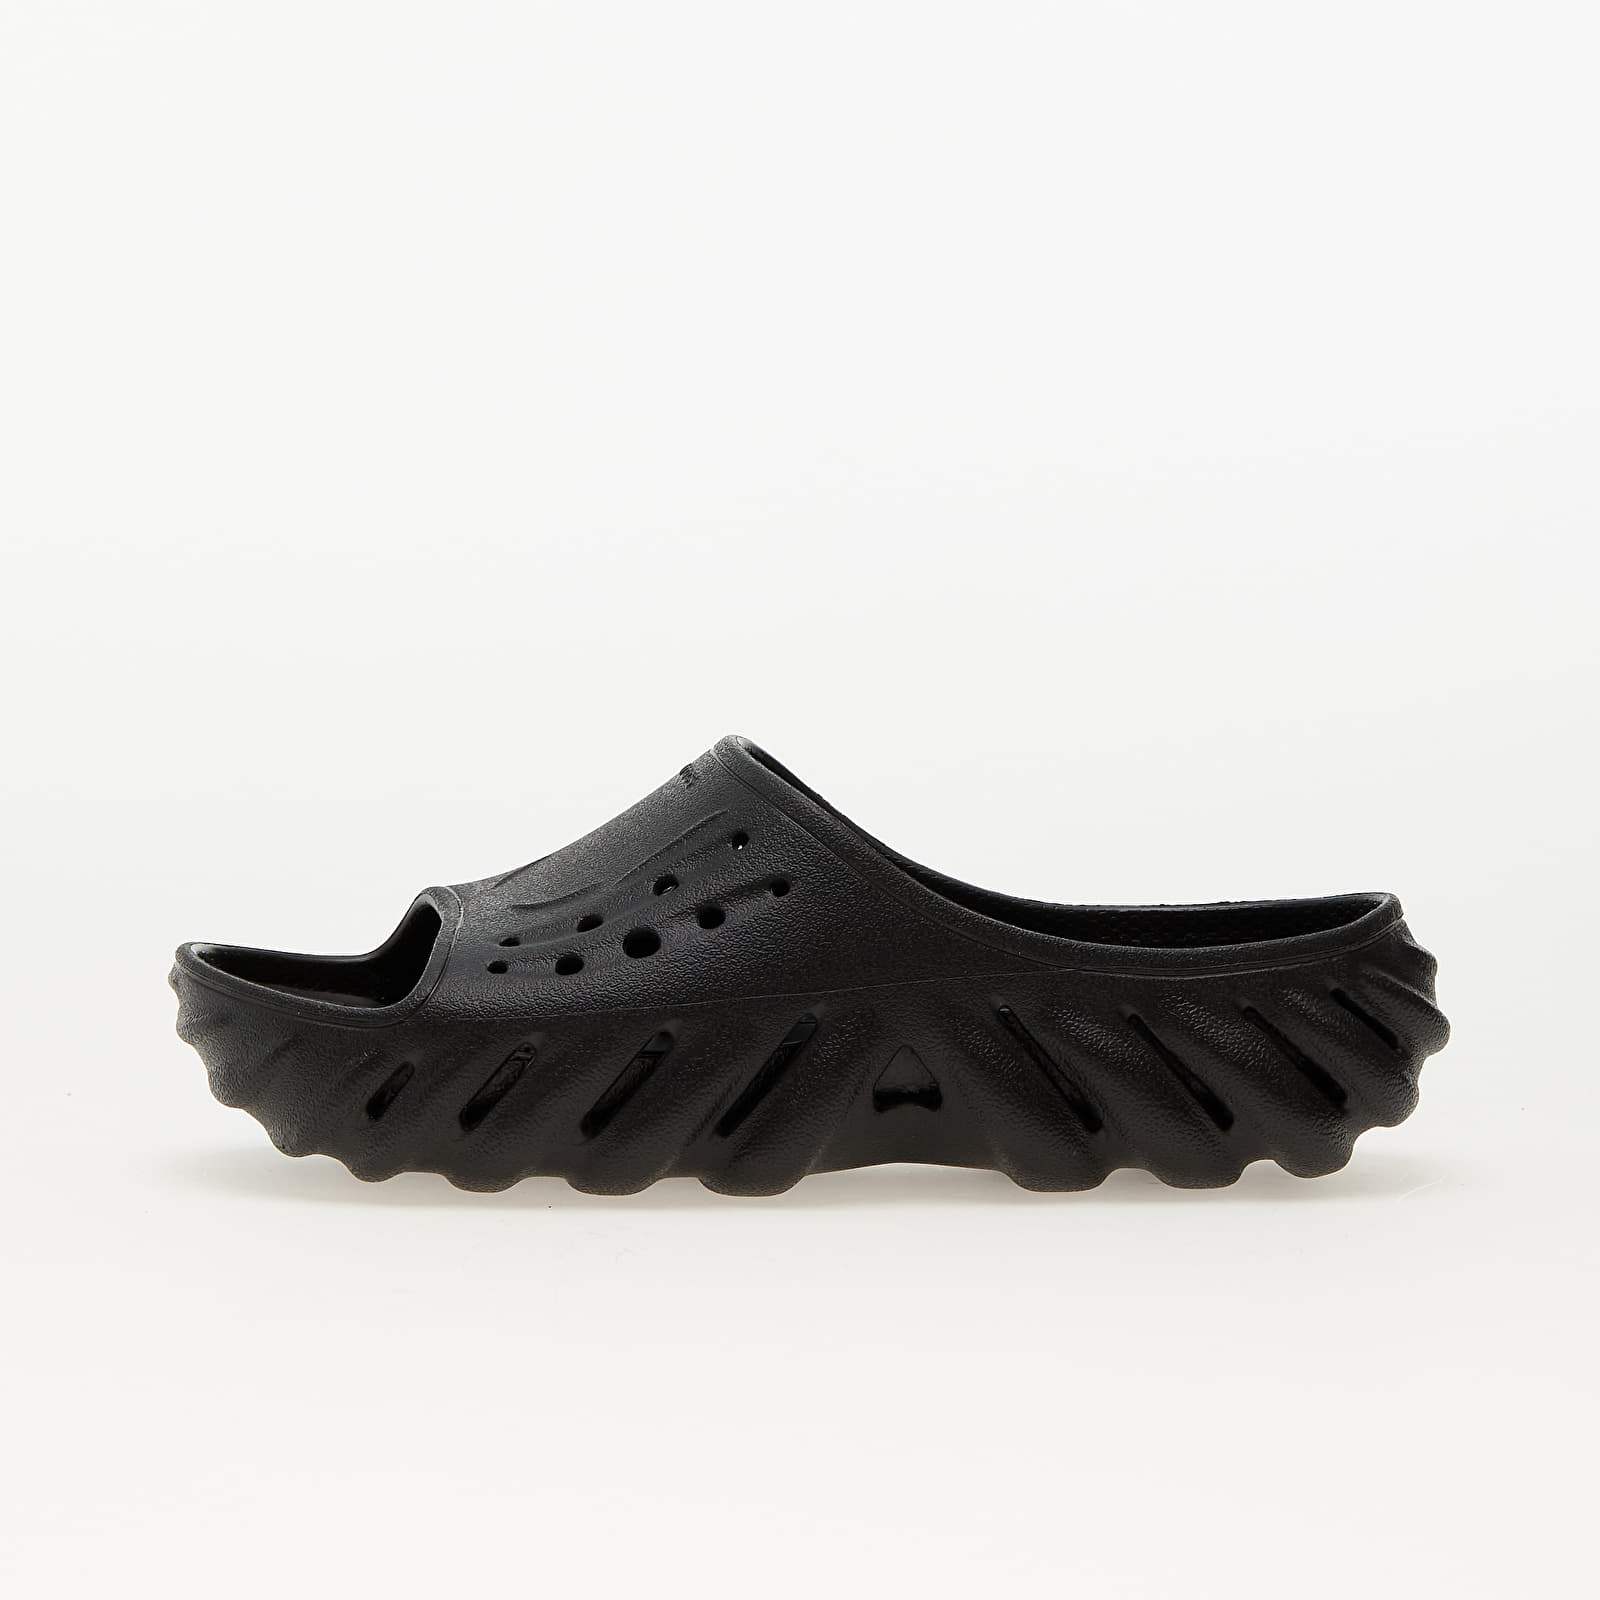 Chaussures et baskets homme Crocs Echo Slide Black